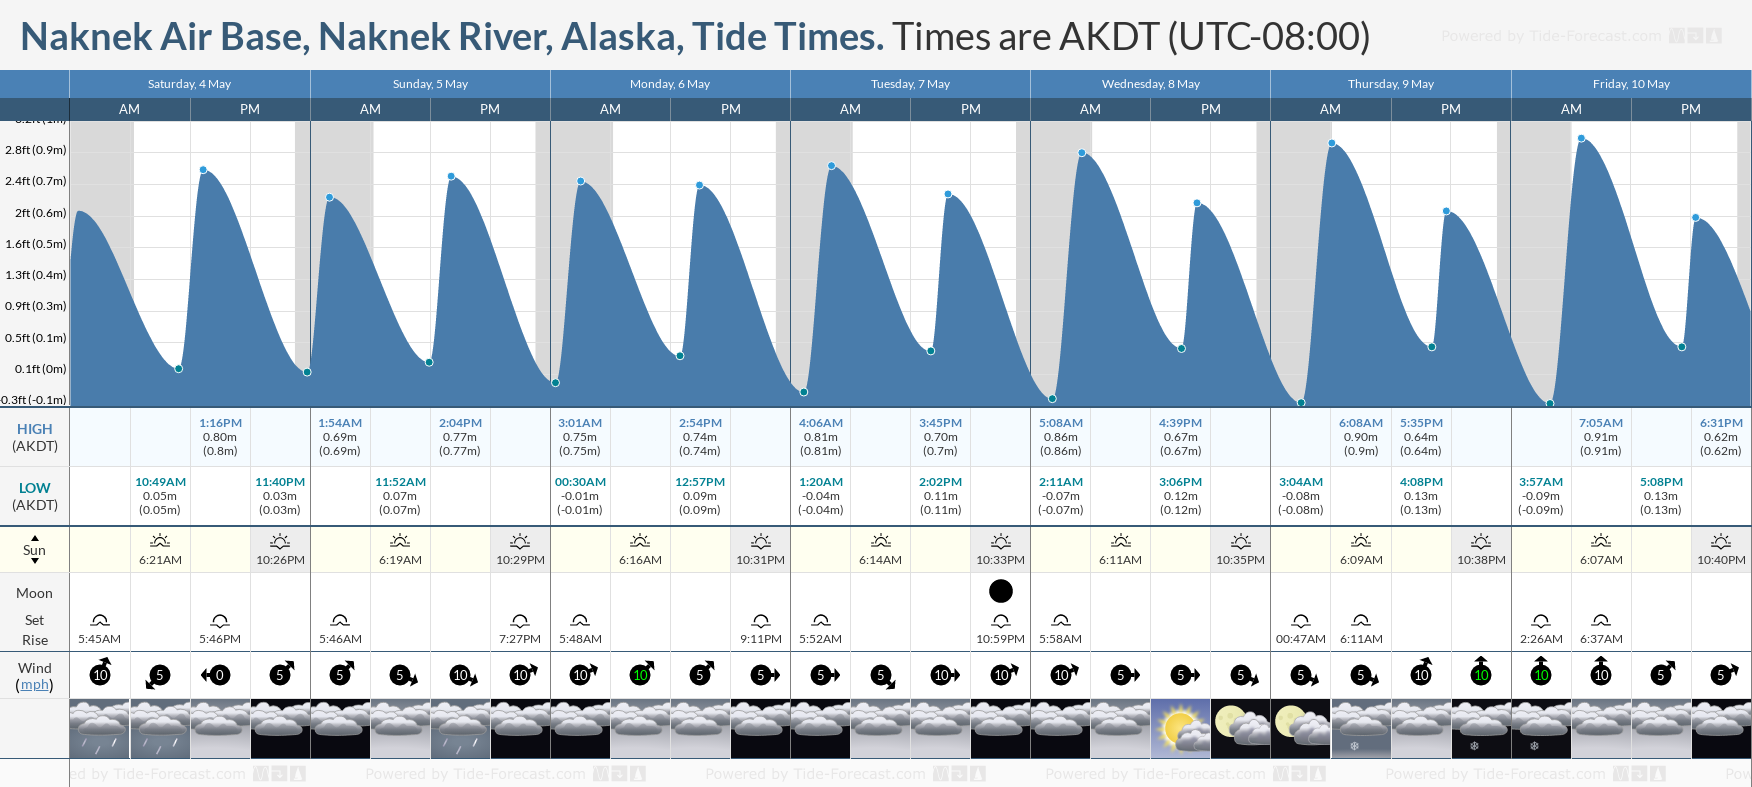 Naknek Air Base, Naknek River, Alaska Tide Chart including high and low tide tide times for the next 7 days